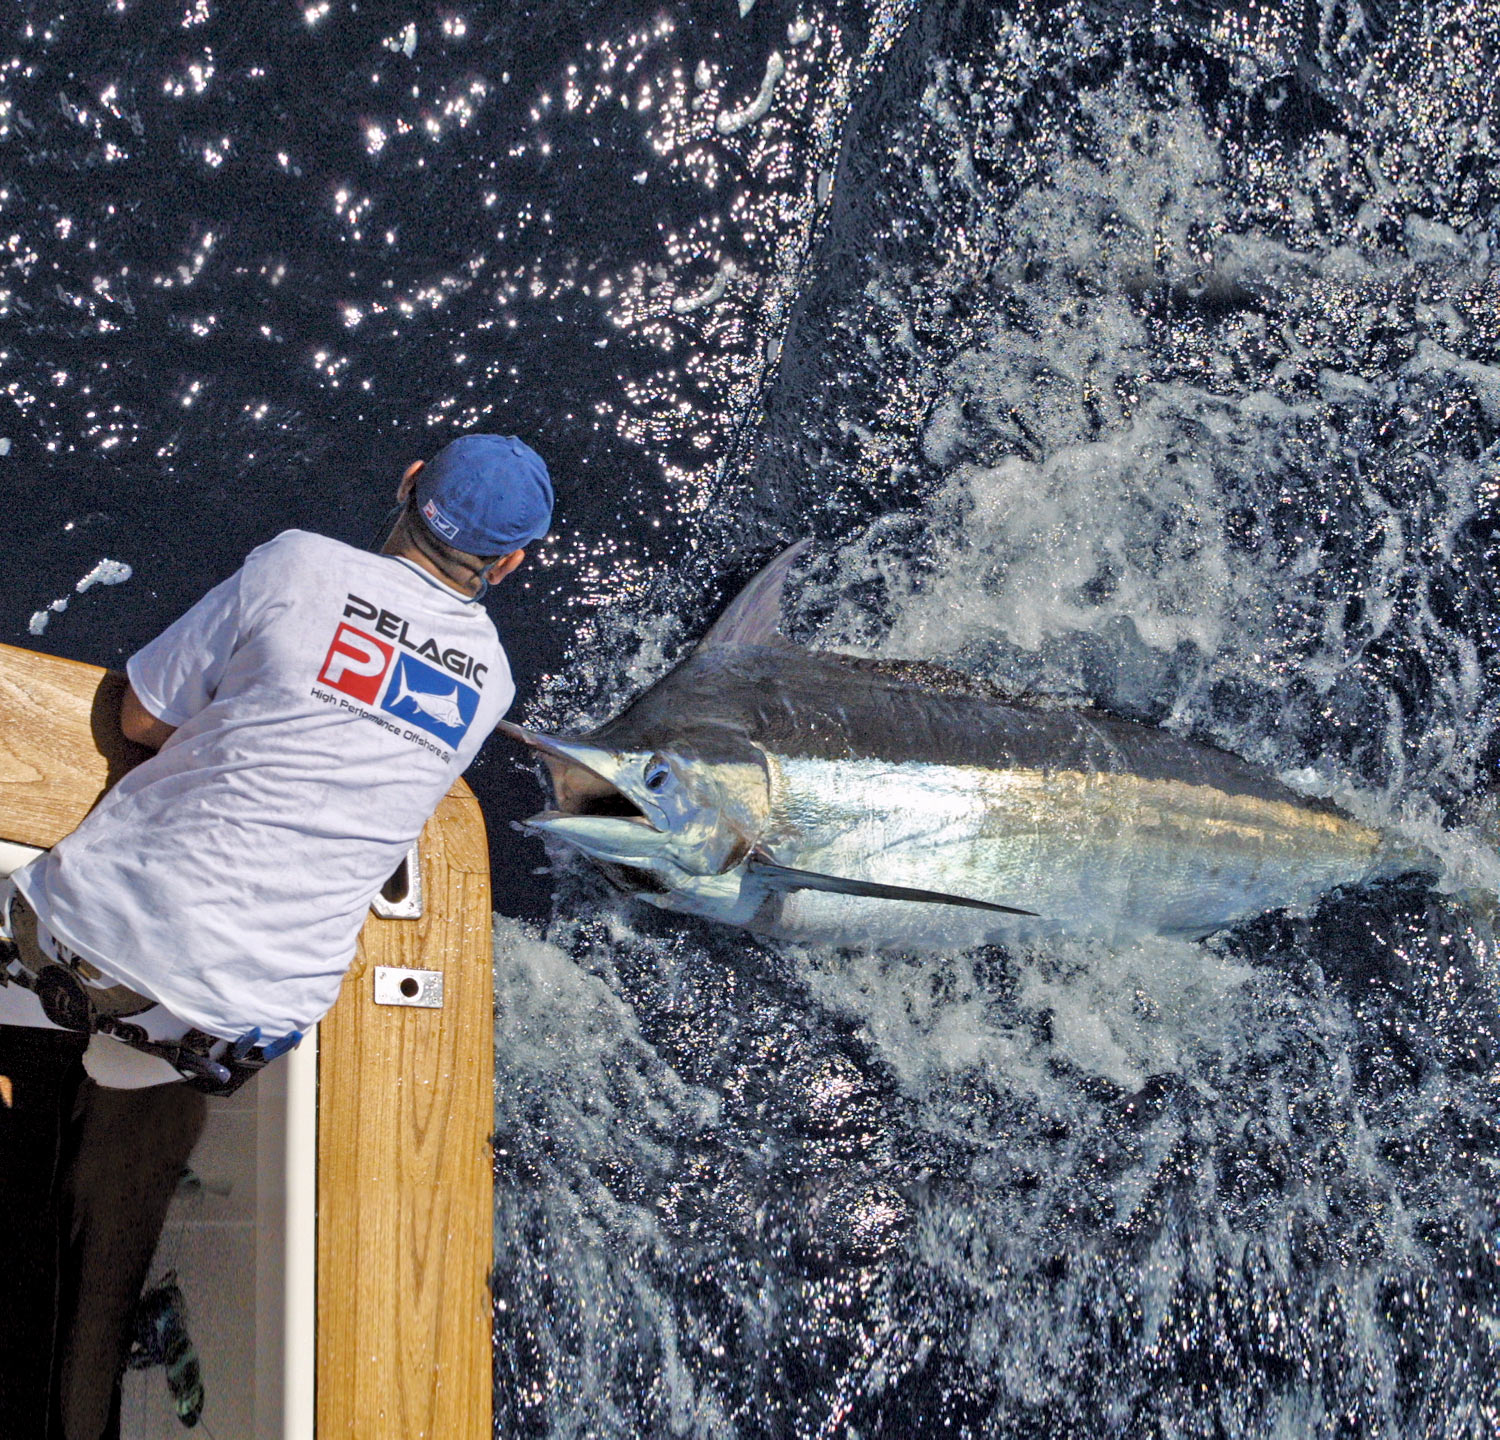 Blue Marlin caught in Australia via Superyacht